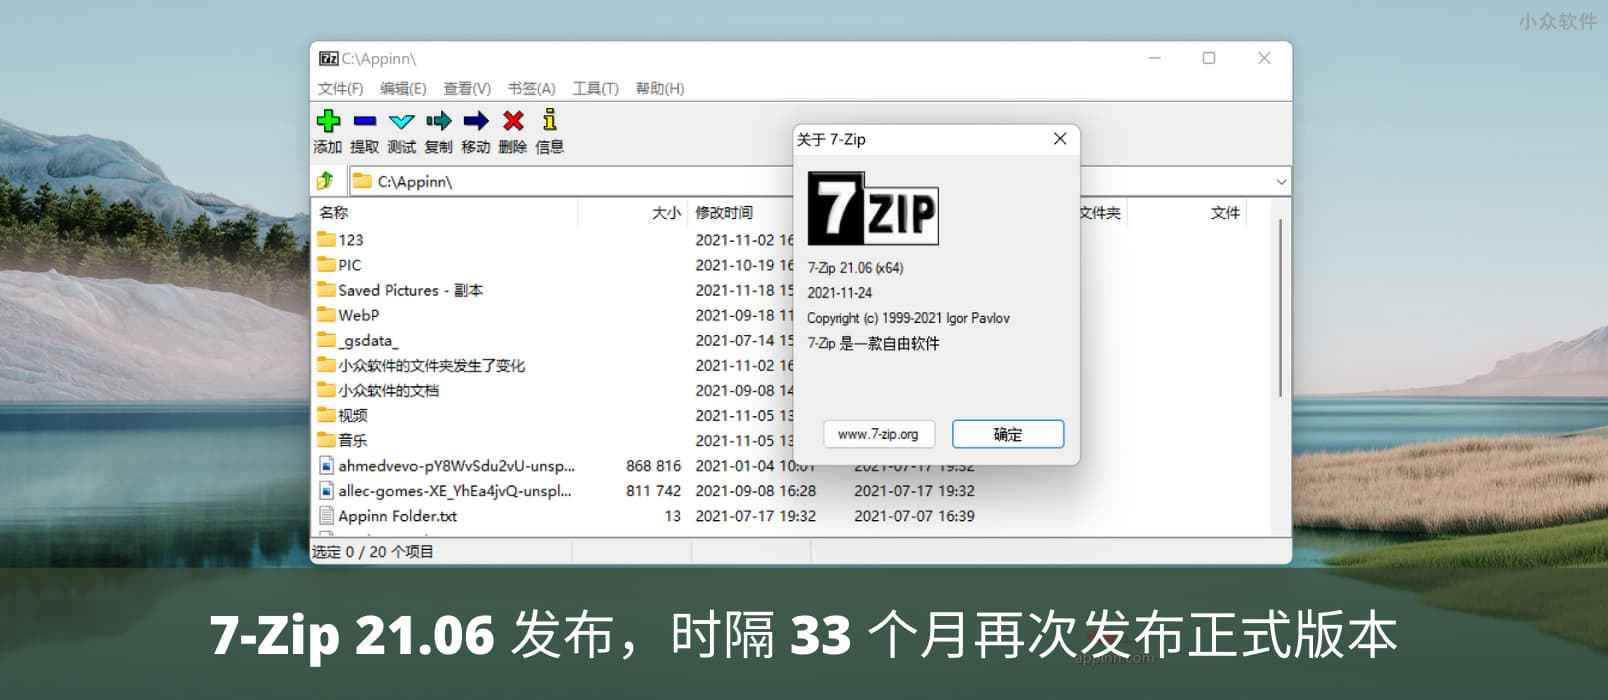 开源压缩工具 7-Zip 21.06 发布下载，时隔 33 个月再次发布正式版本